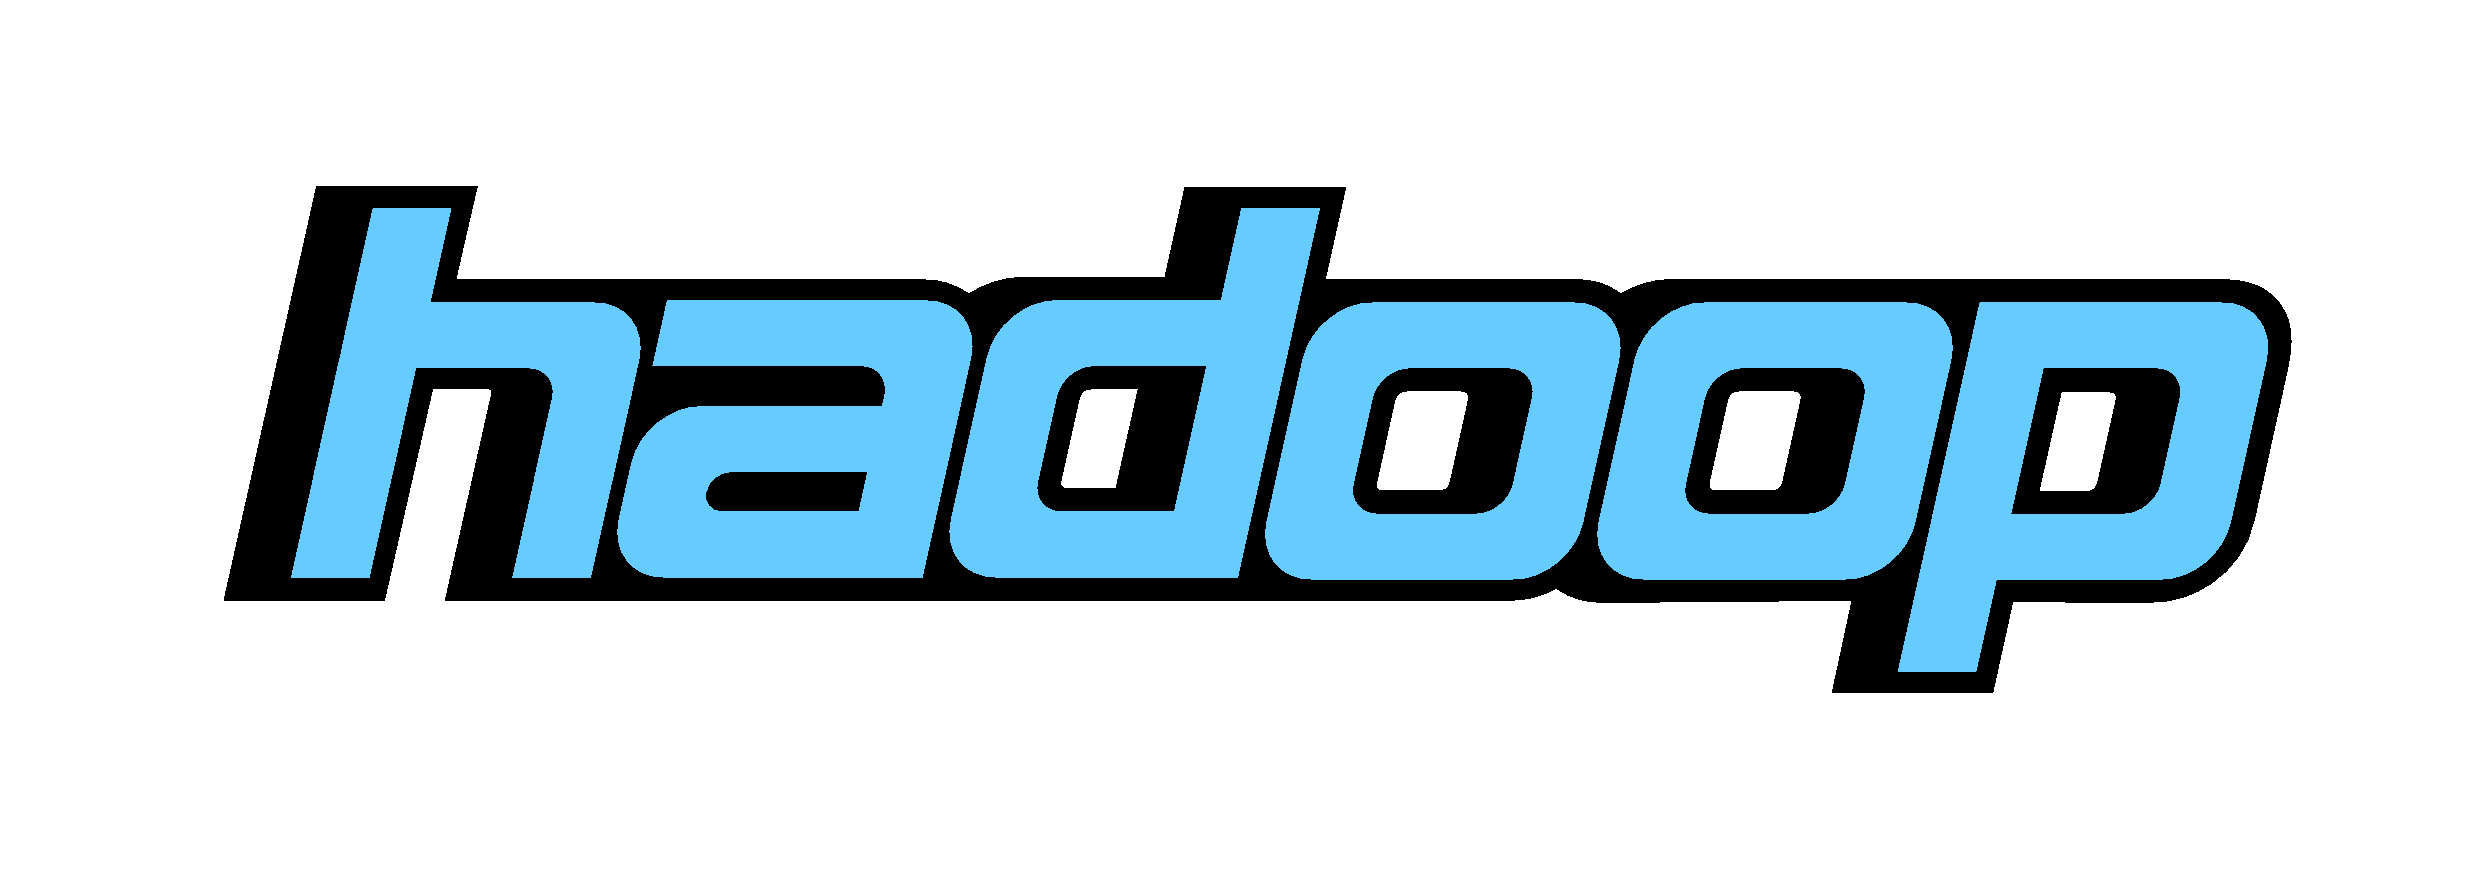 Hadoop Logo - asf - Revision 820841: /hadoop/hdfs/site/publish/logos